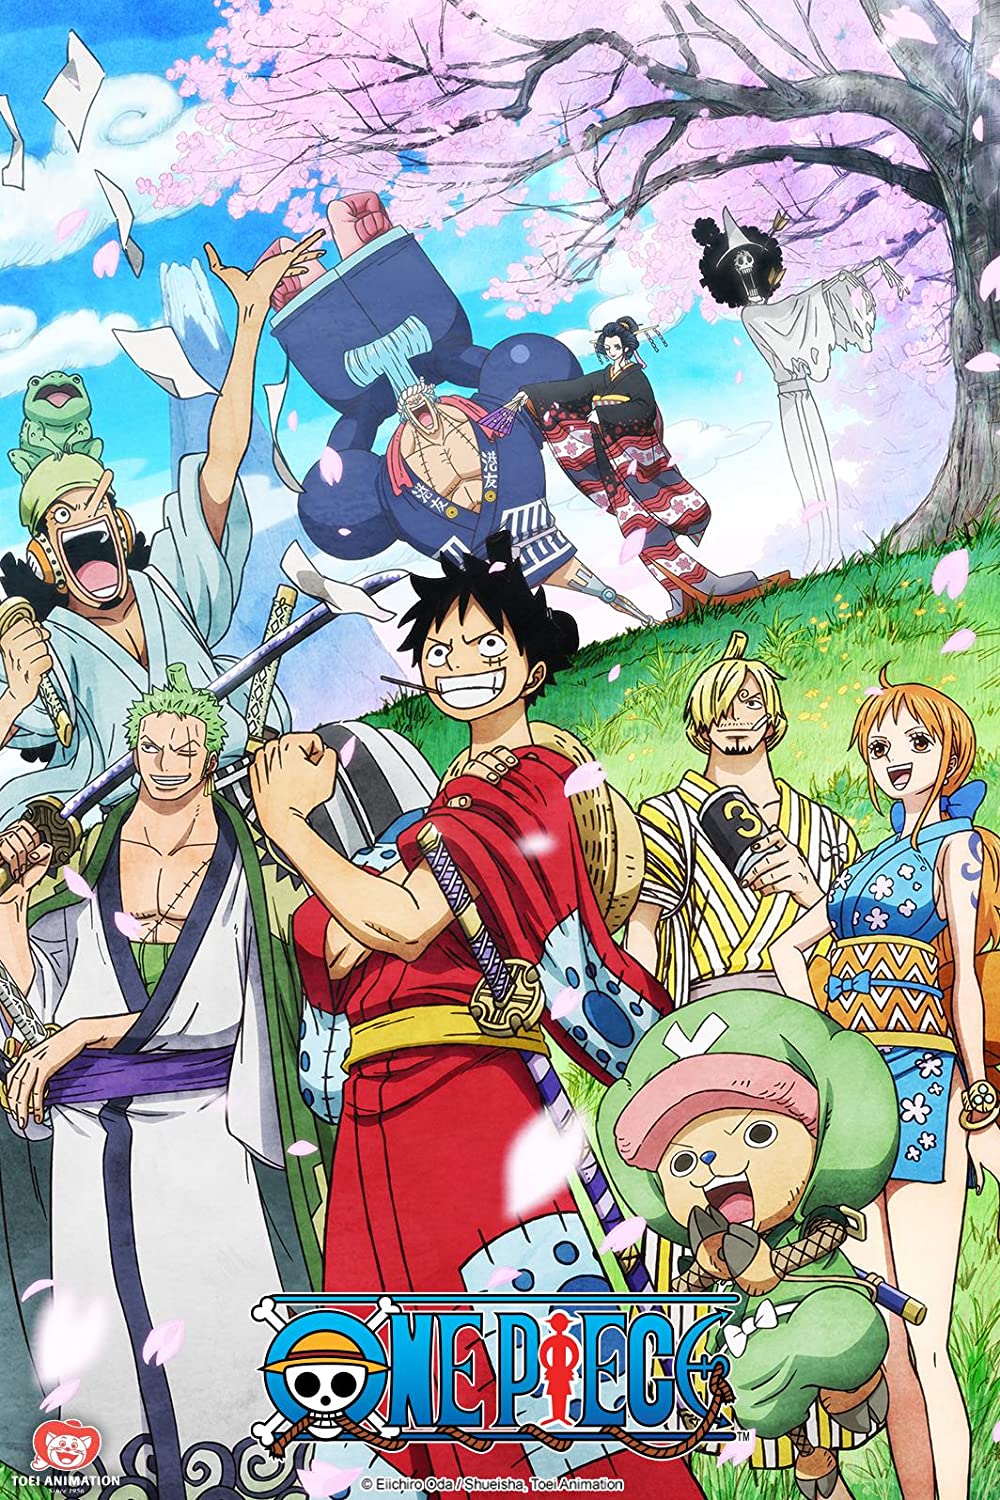 ดูหนังออนไลน์ฟรี One Piece Season 1 EP.21 วันพีช อิสท์บลู ซีซั่น 1 ตอนที่ 21